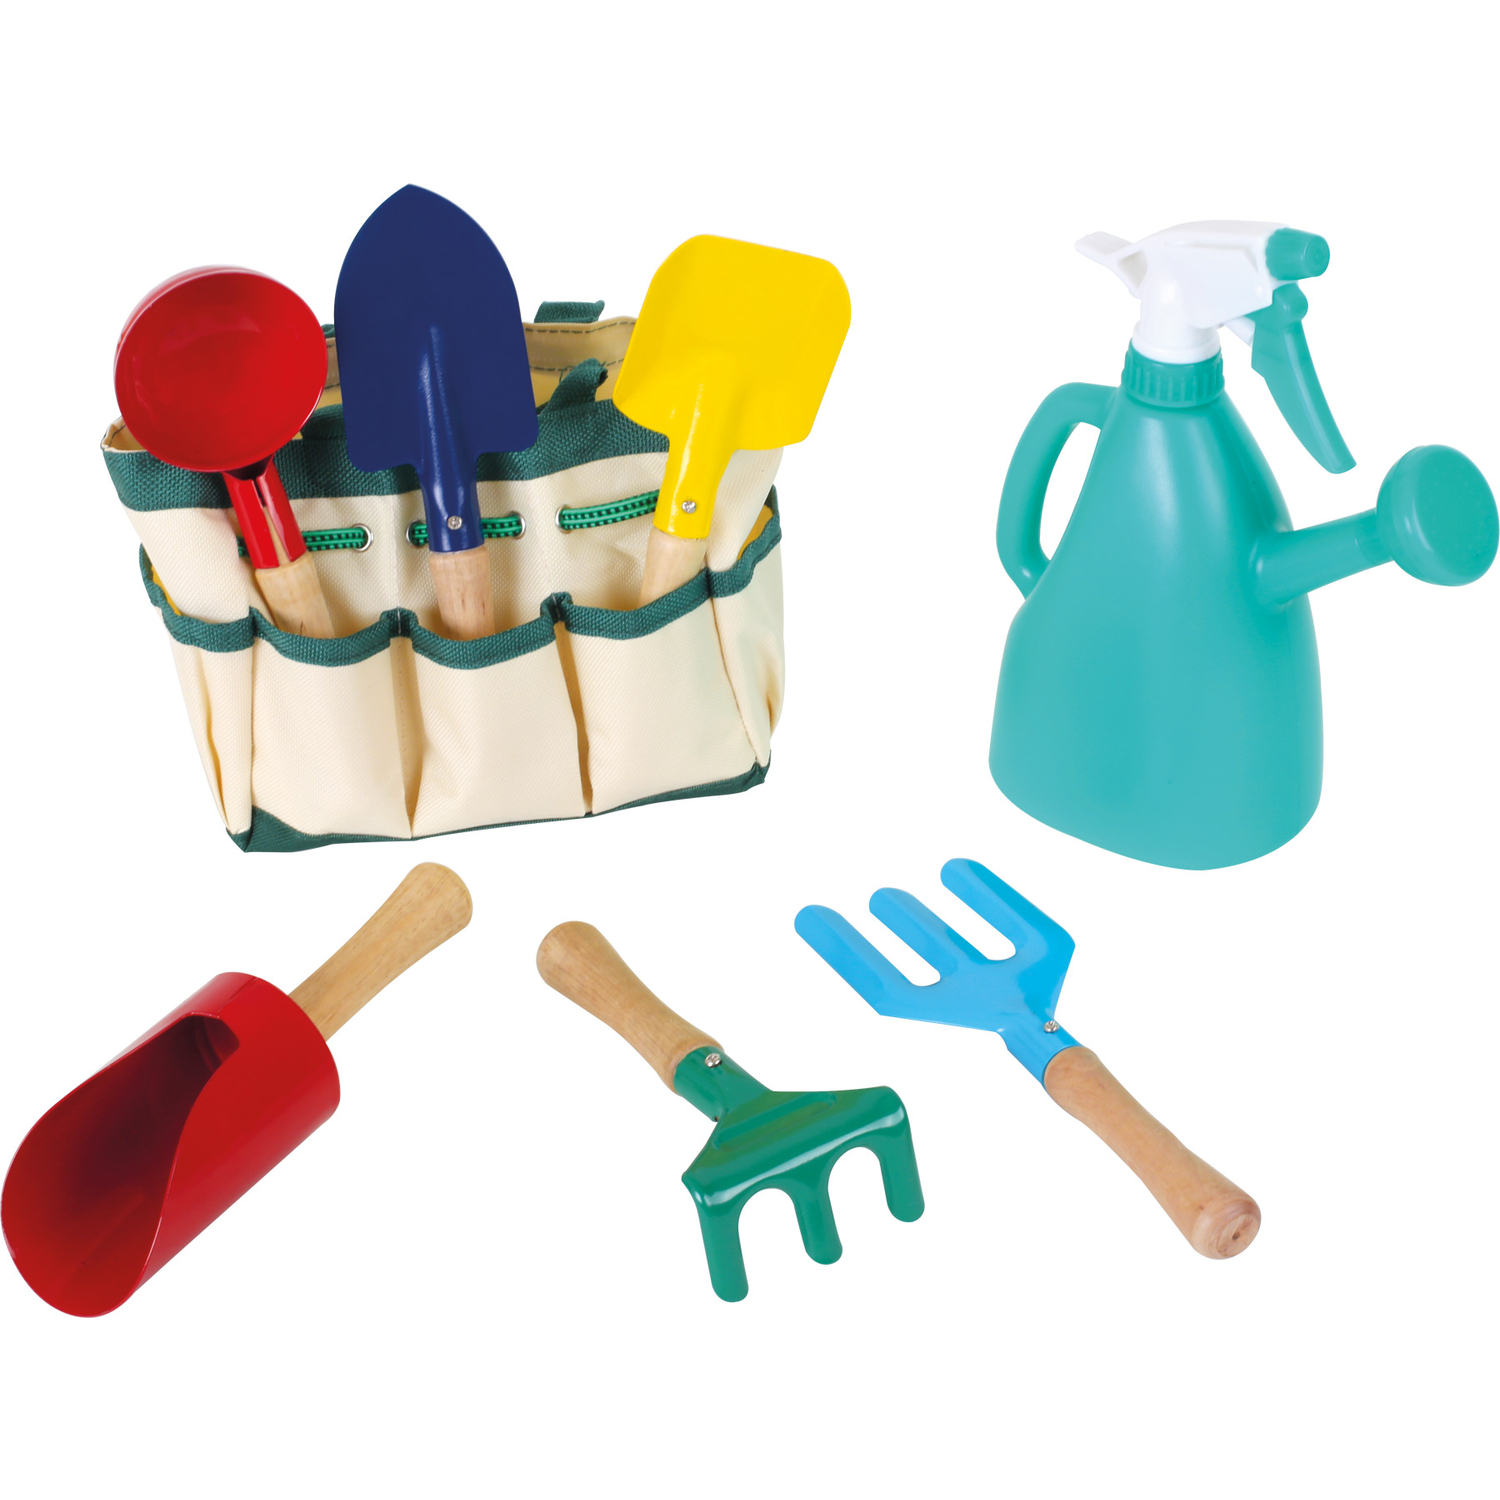 Mini Kinder Spielzeug Garten-Kleingeräte Gartenwerkzeug Set 6 teilig Tragetasche 